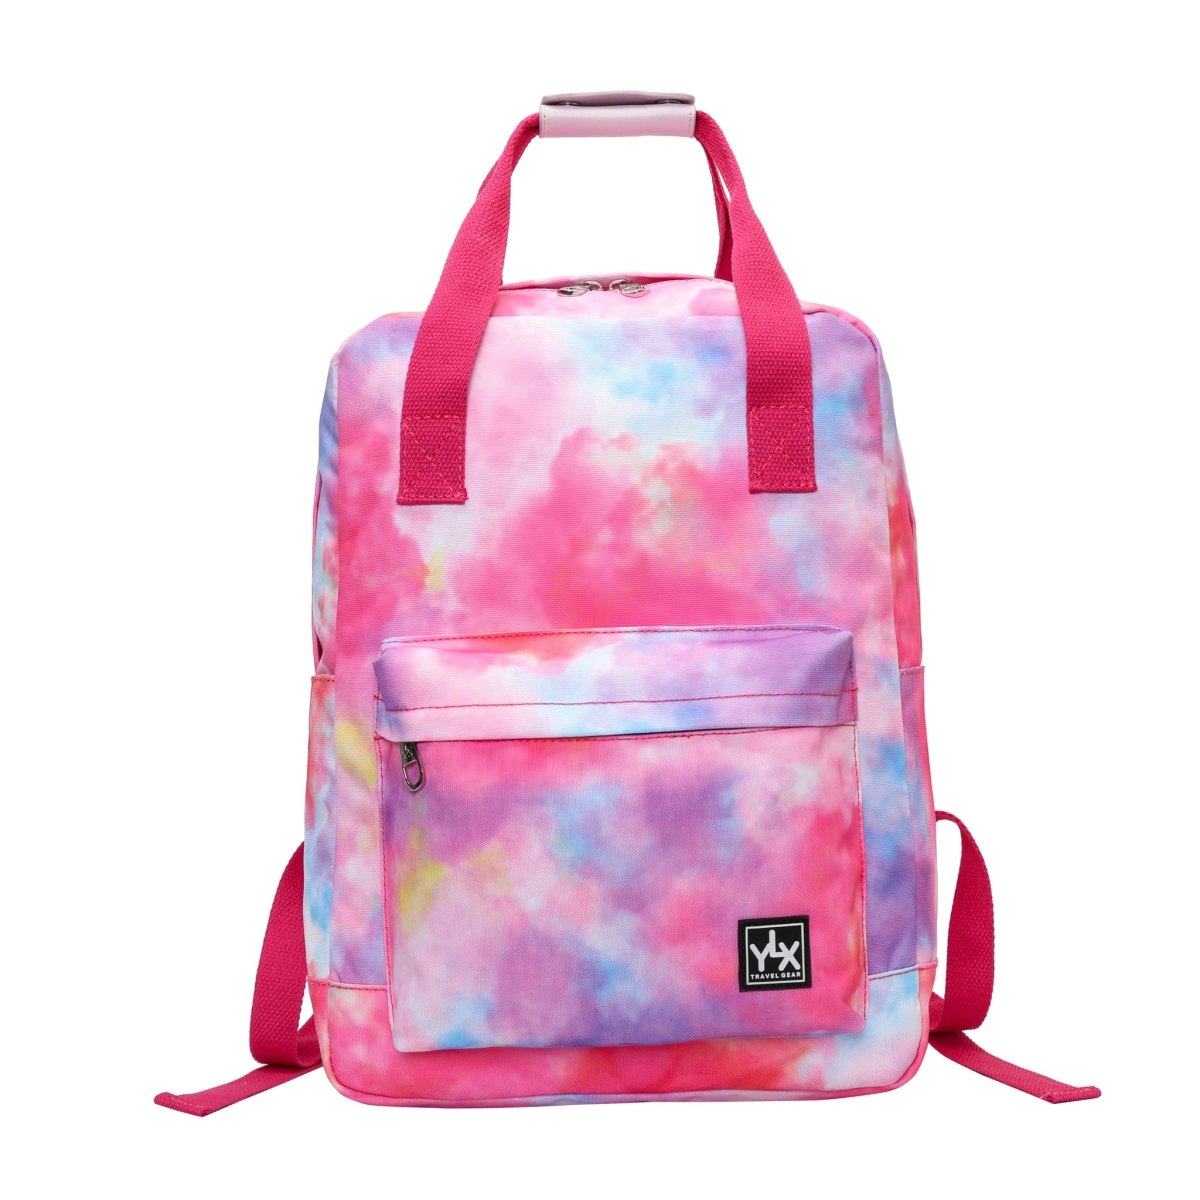 YLX Aspen Backpack | Tie Dye Pink